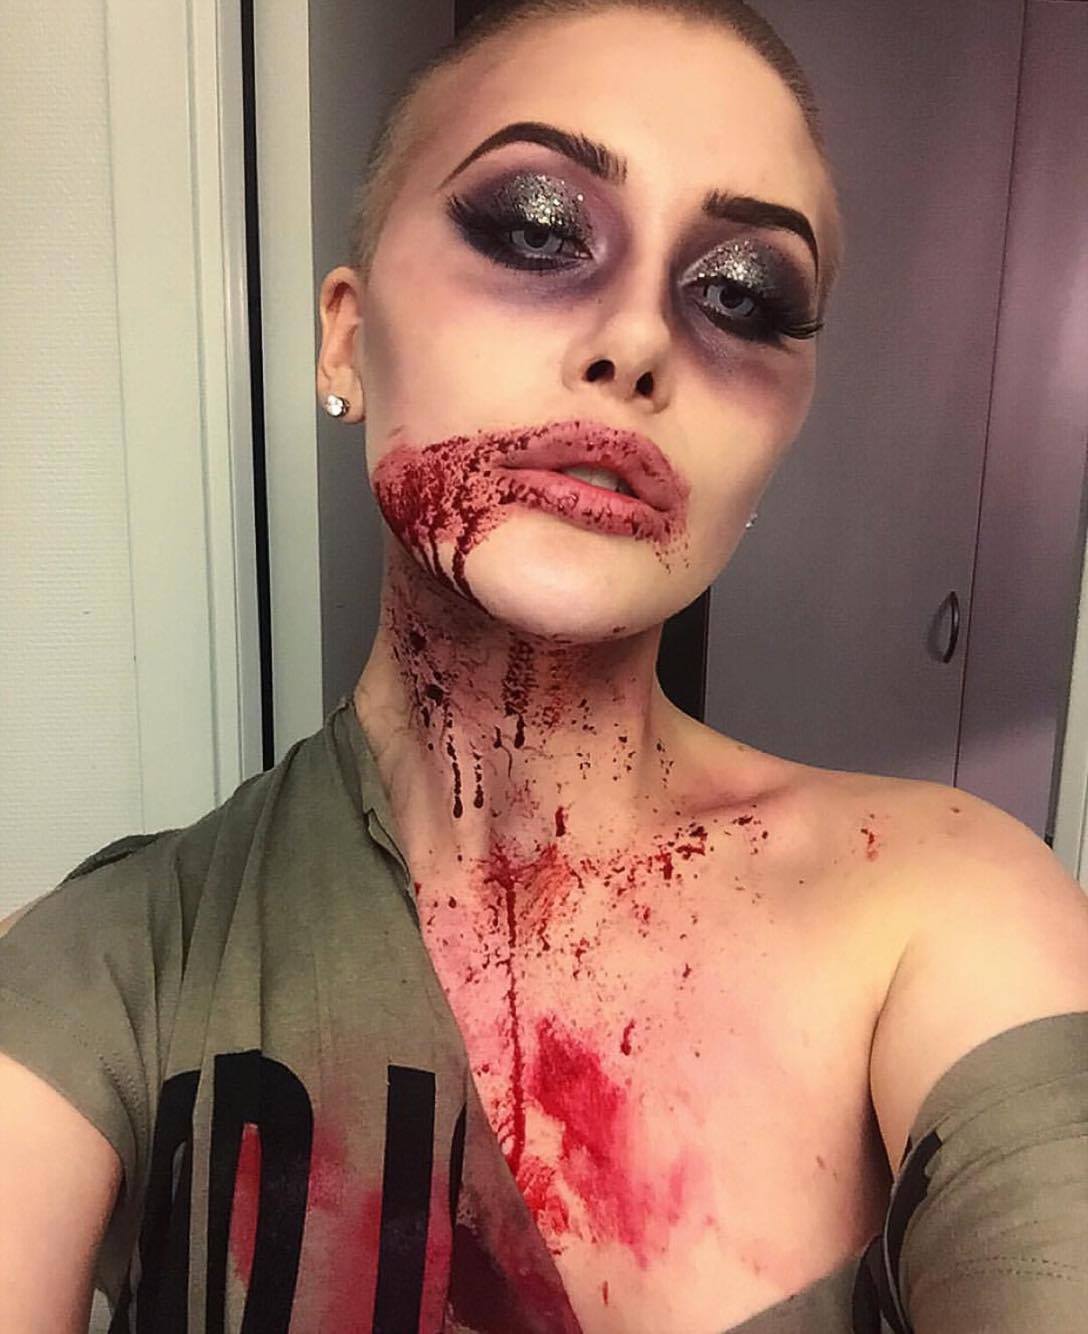 Julia gör skräckinjagande makeuper: "Vissa vill inte ens kolla på bilderna" - Nyheter24